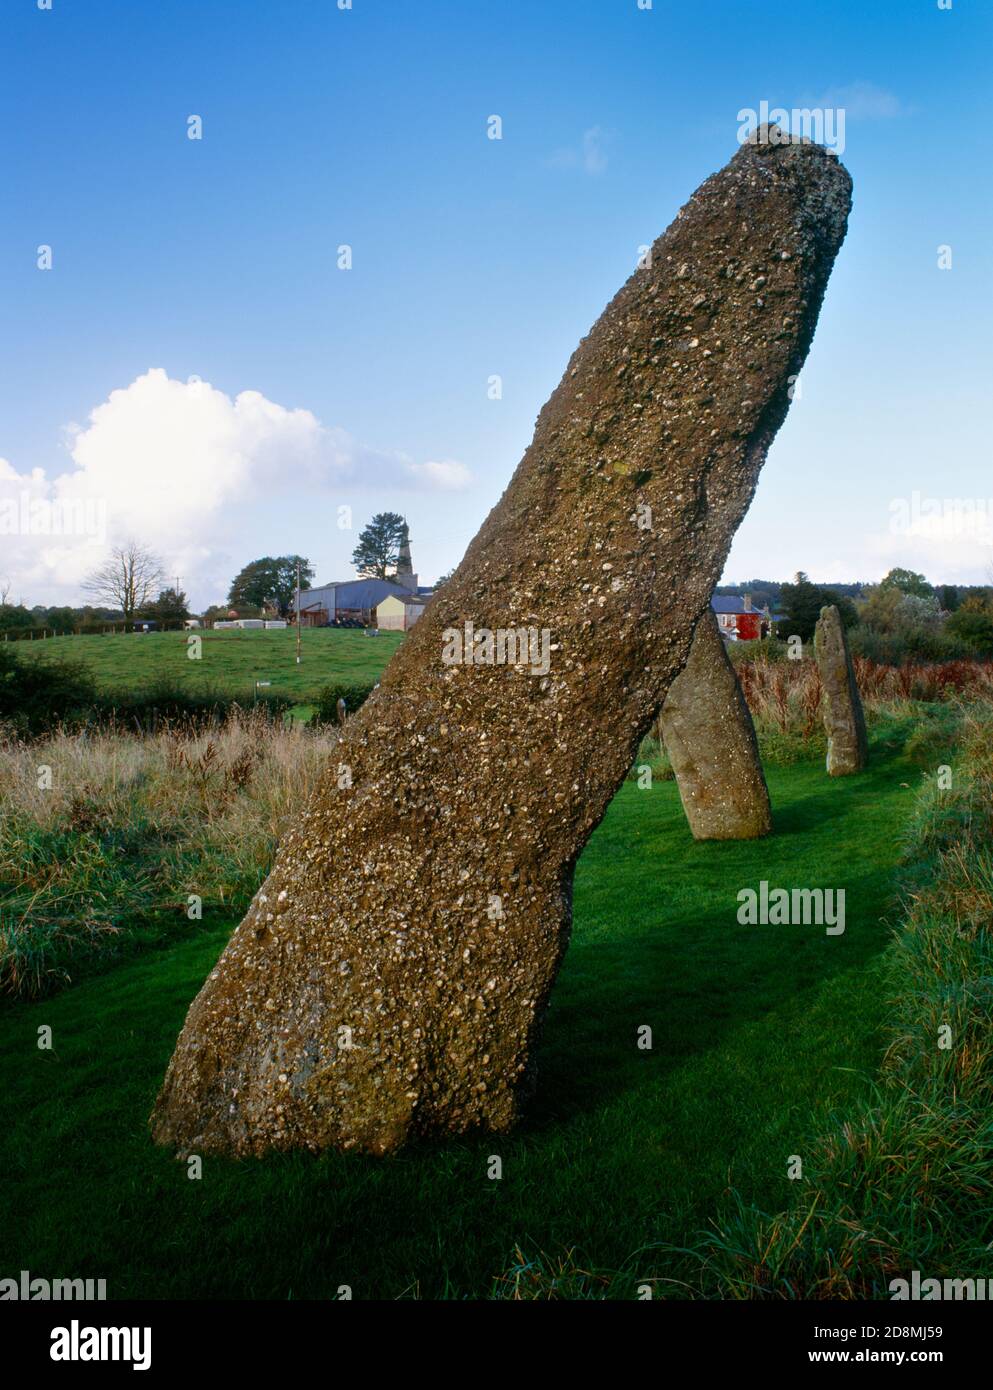 Harold's Stones prähistorische Steinreihe, Trellech, Monmouthshire, Wales, Großbritannien, Blick nordöstlich zur St. Nicholas' Church. Drei Säulen aus lokalem 'Puddingstein'. Stockfoto